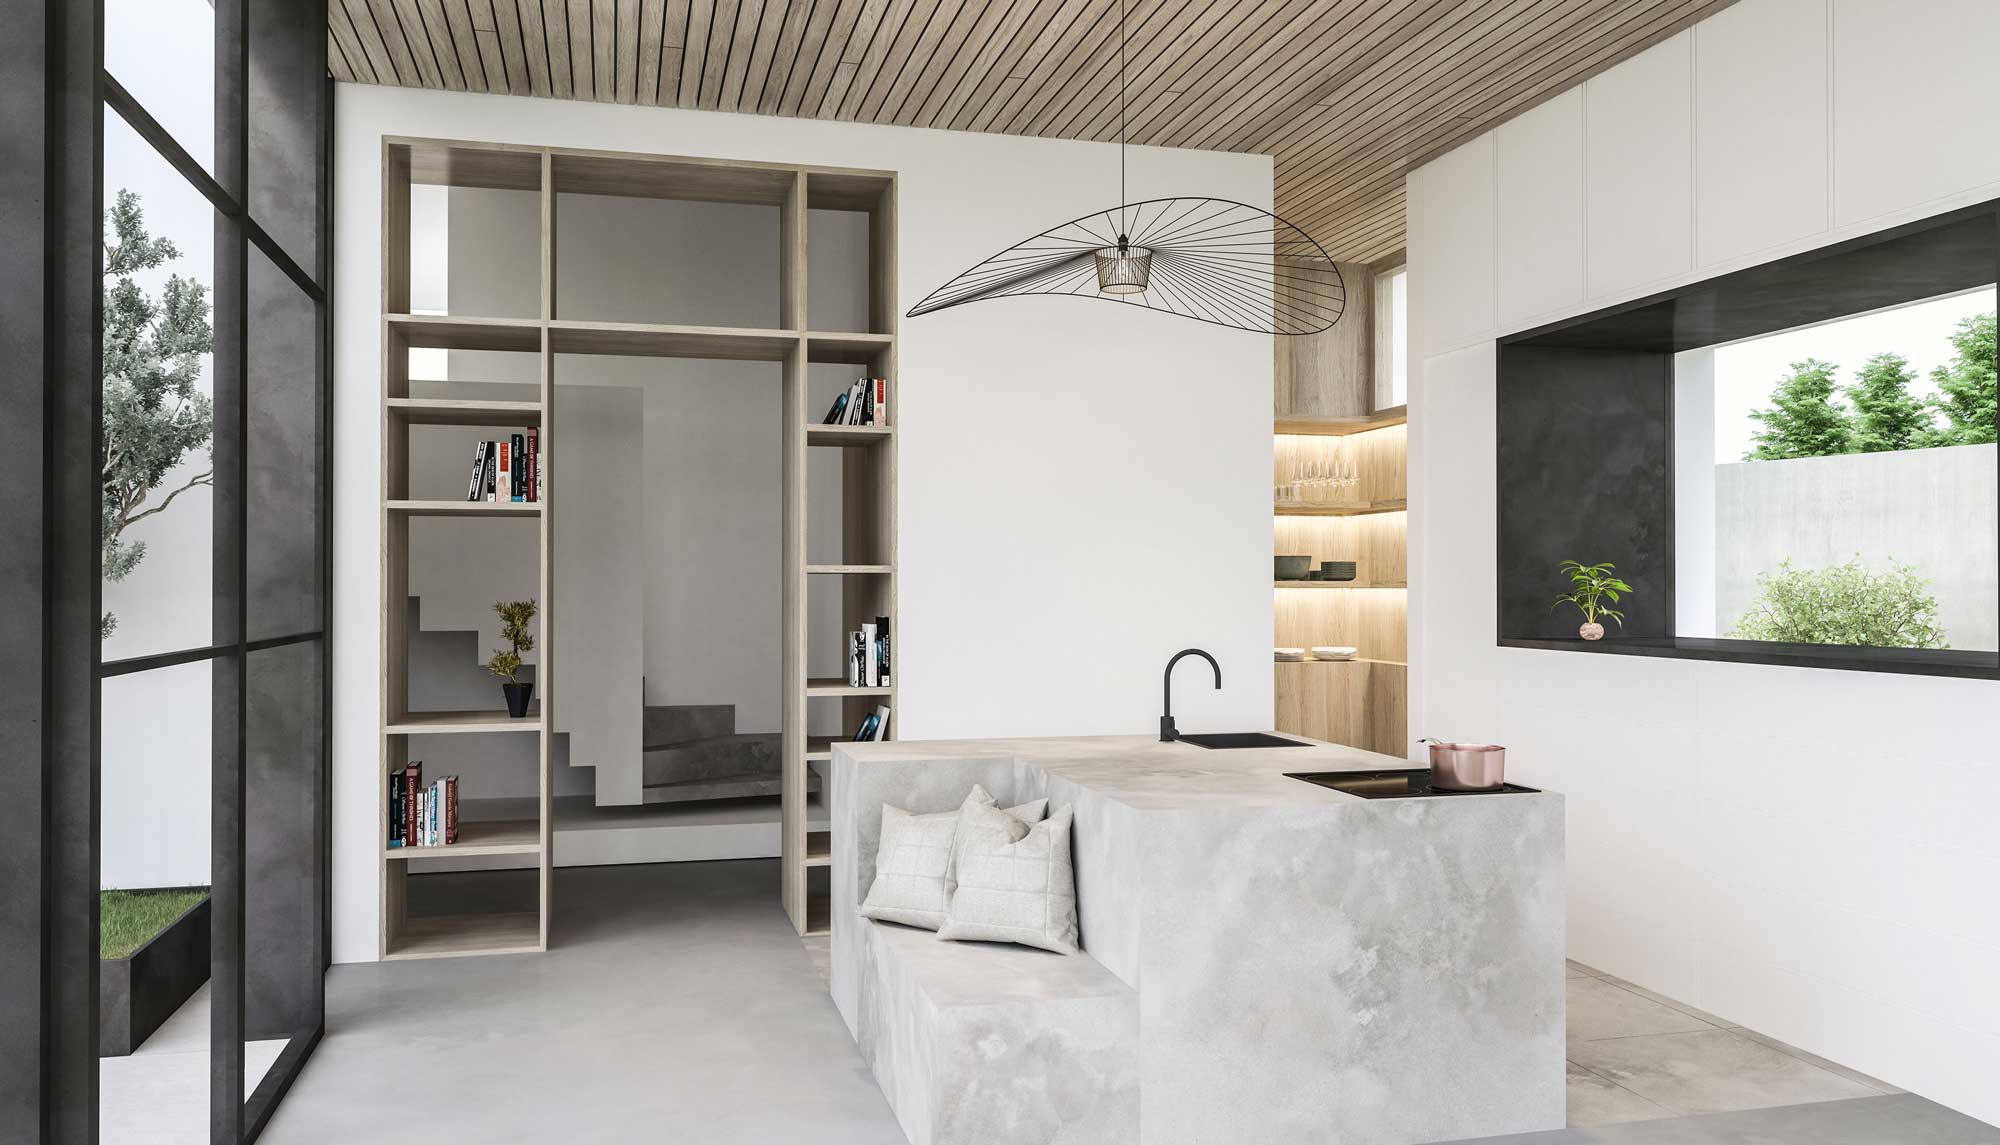 Moderner Hausbau | Architekturbüro Innsbruck Land | Freistehender Küchenblock